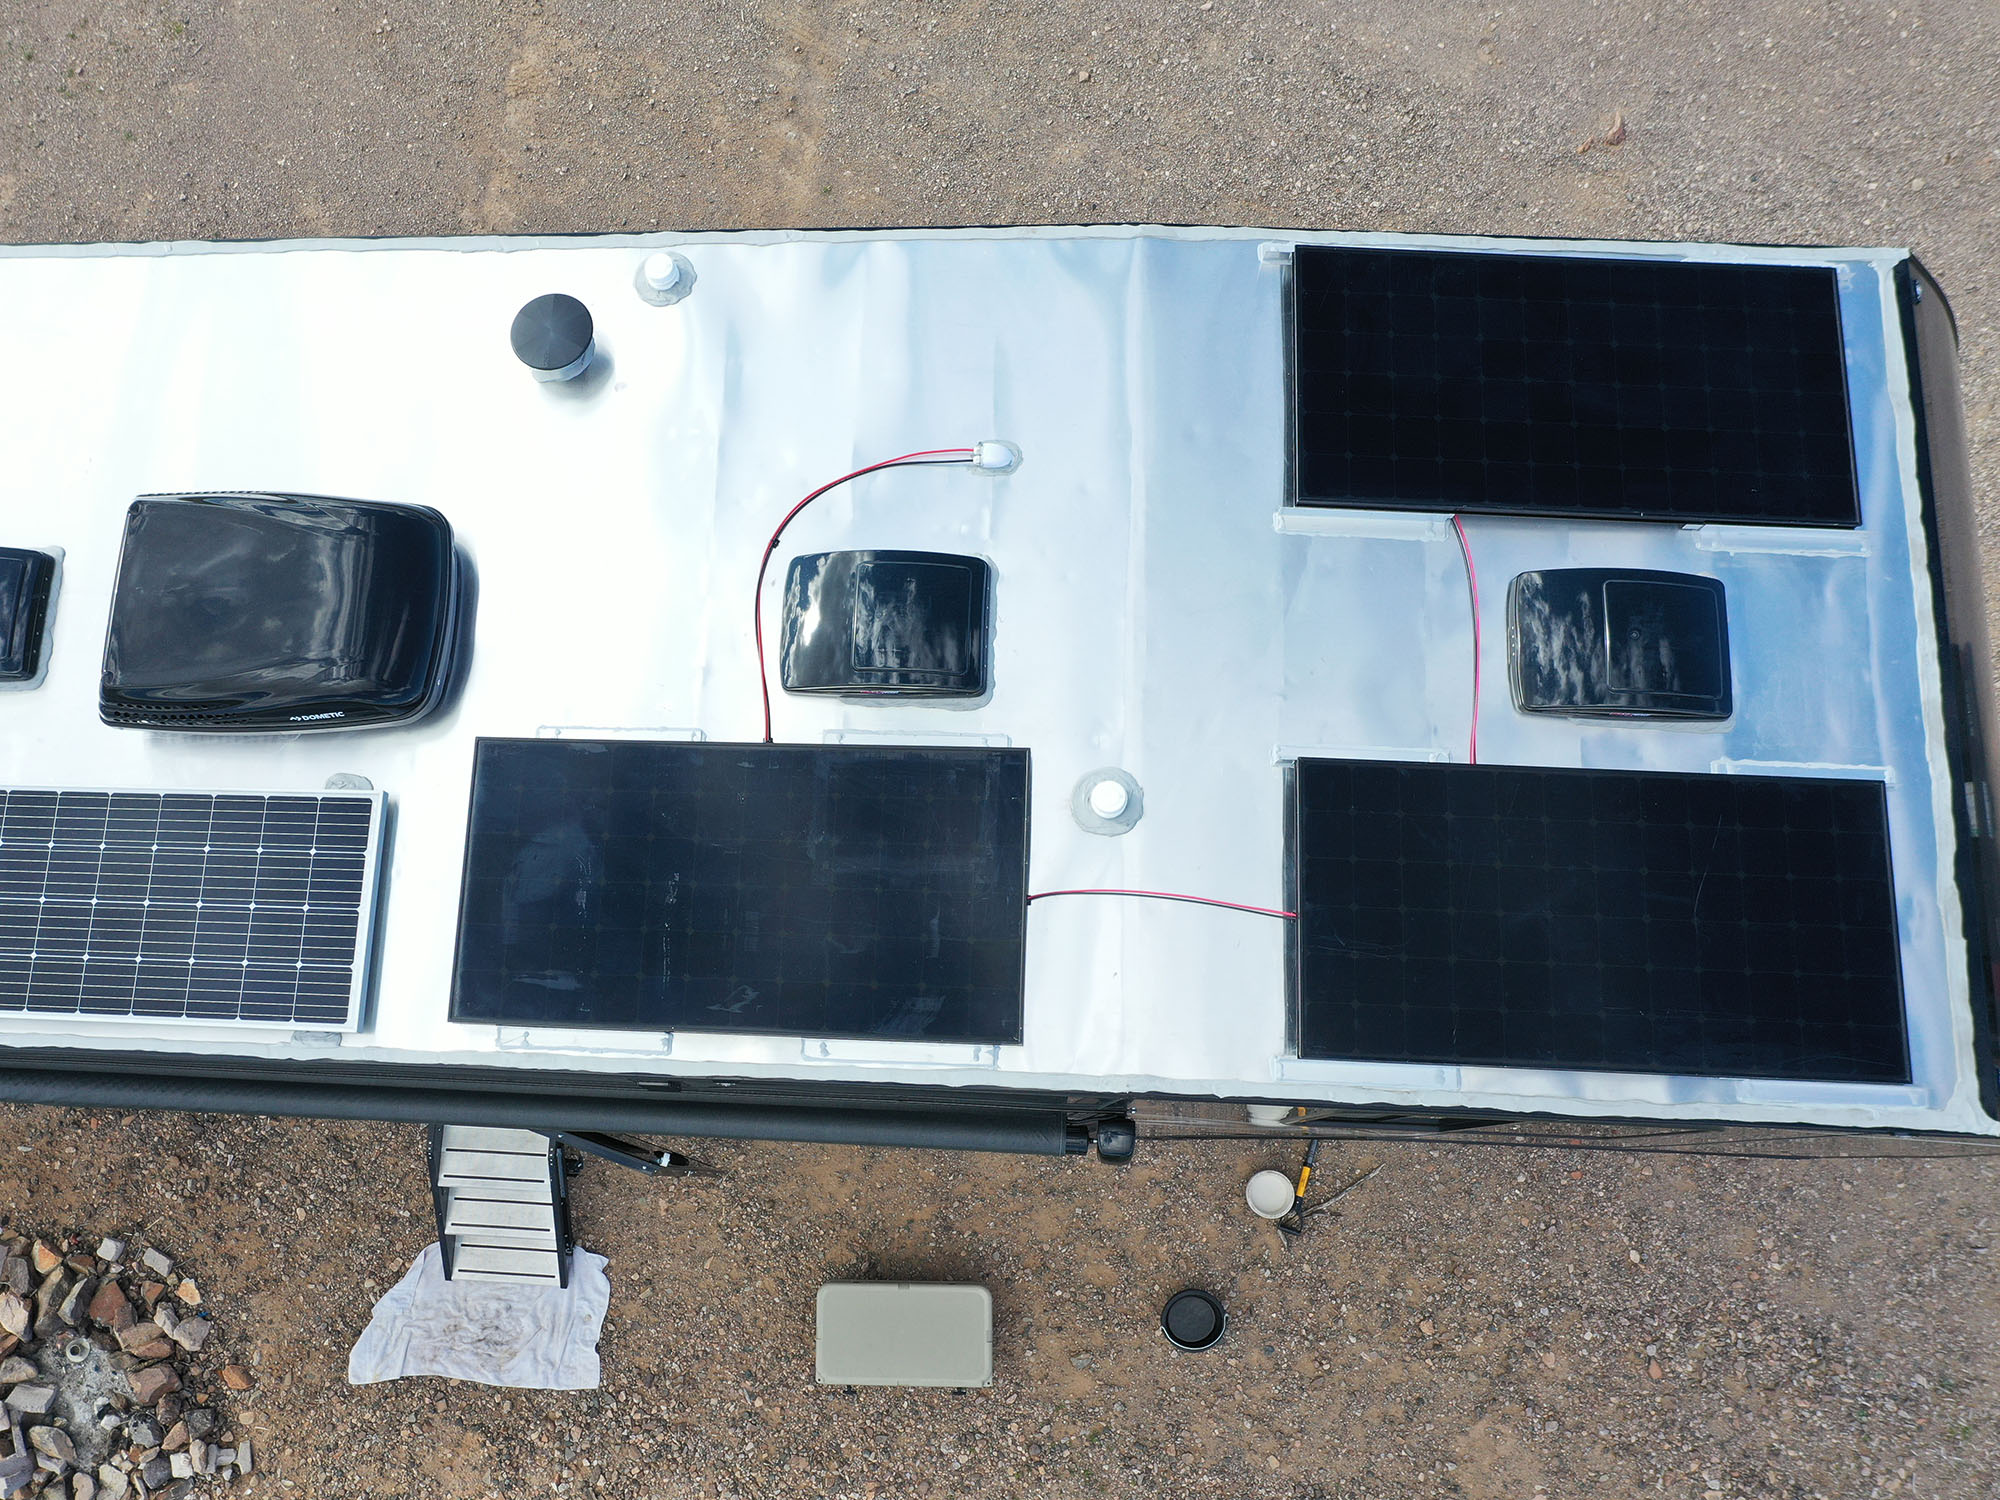 950 Watt Solar Panel Install, 32 Foot Fifth Wheel